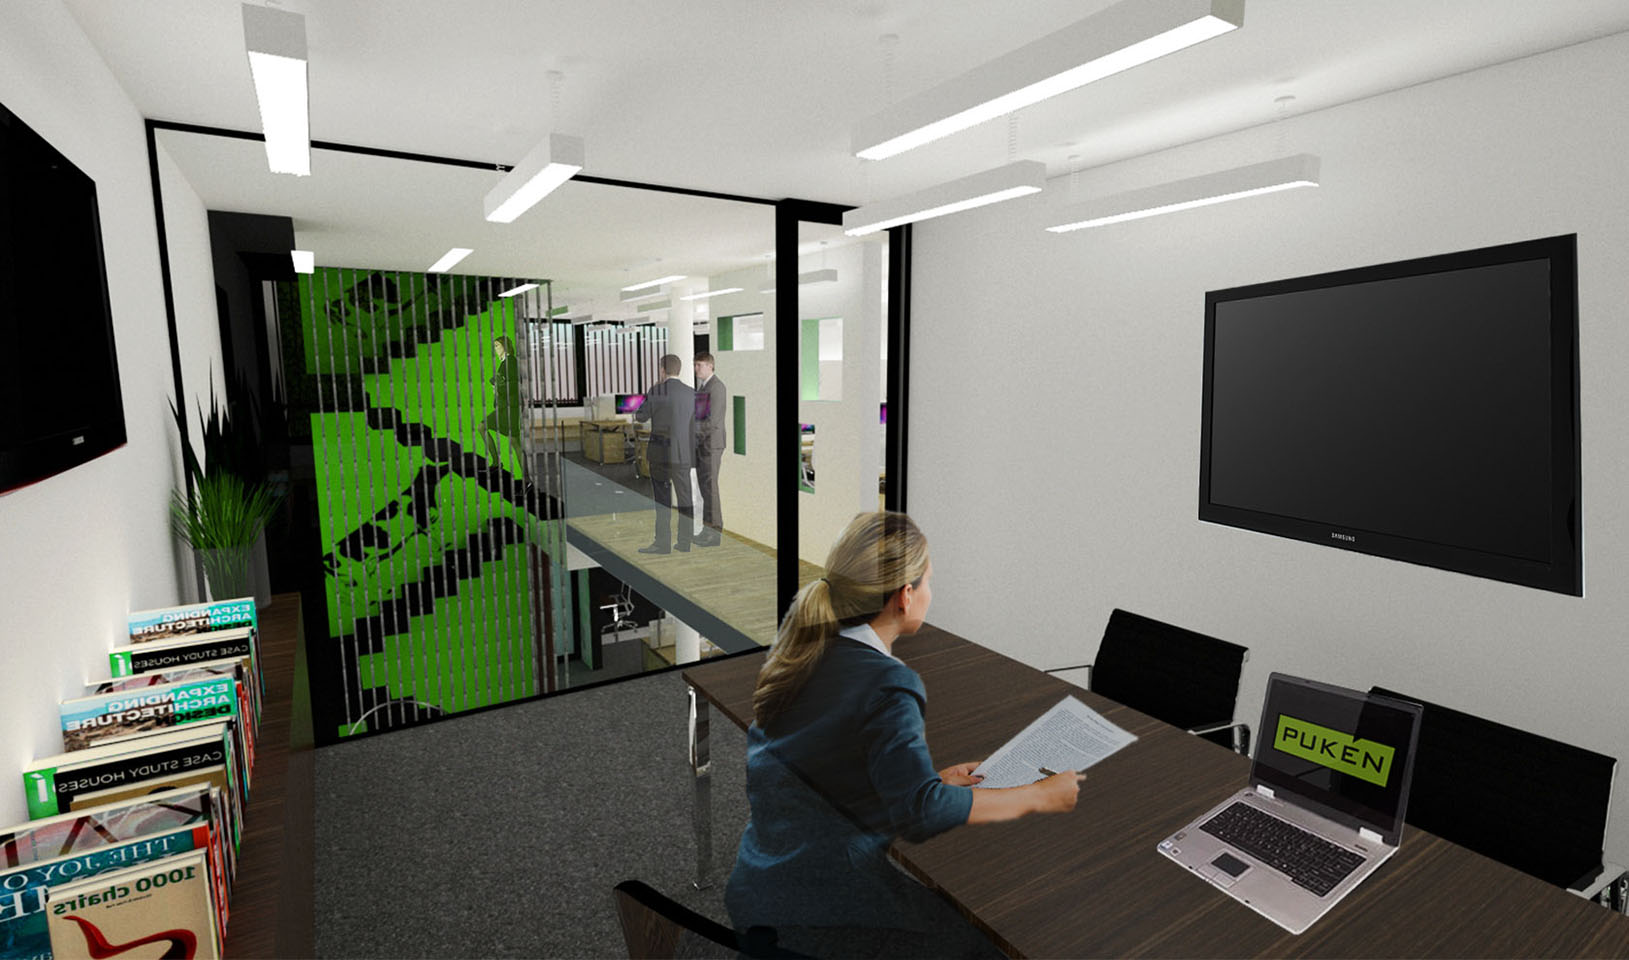 Interacción de espacios en oficinas modernas, interiores coloridos en oficinas